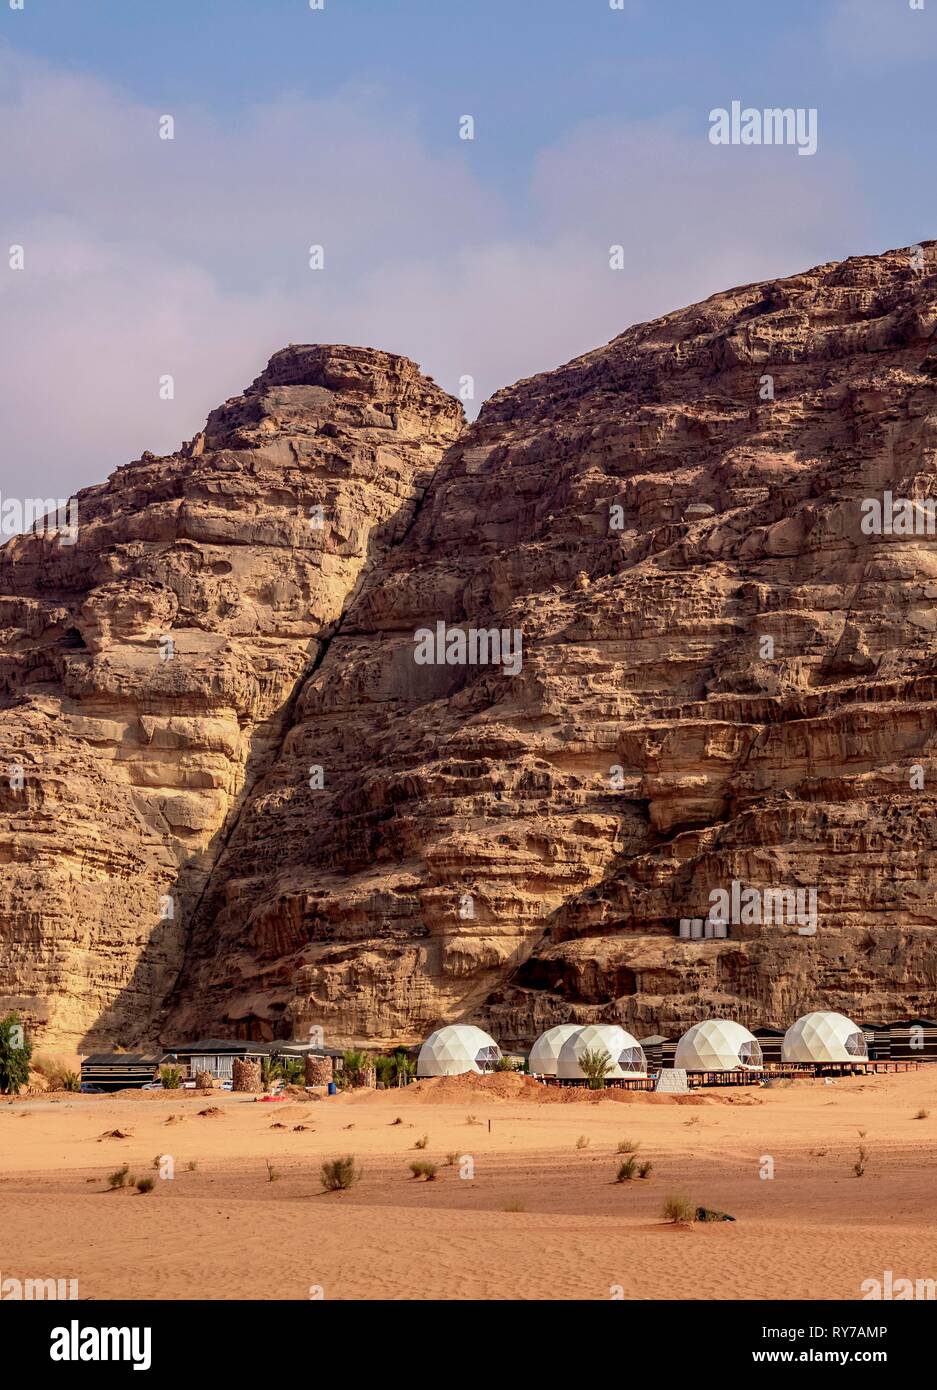 Hasan Zawaideh Camp, tourist accommodation, Wadi Rum, Aqaba Governorate, Jordan Stock Photo